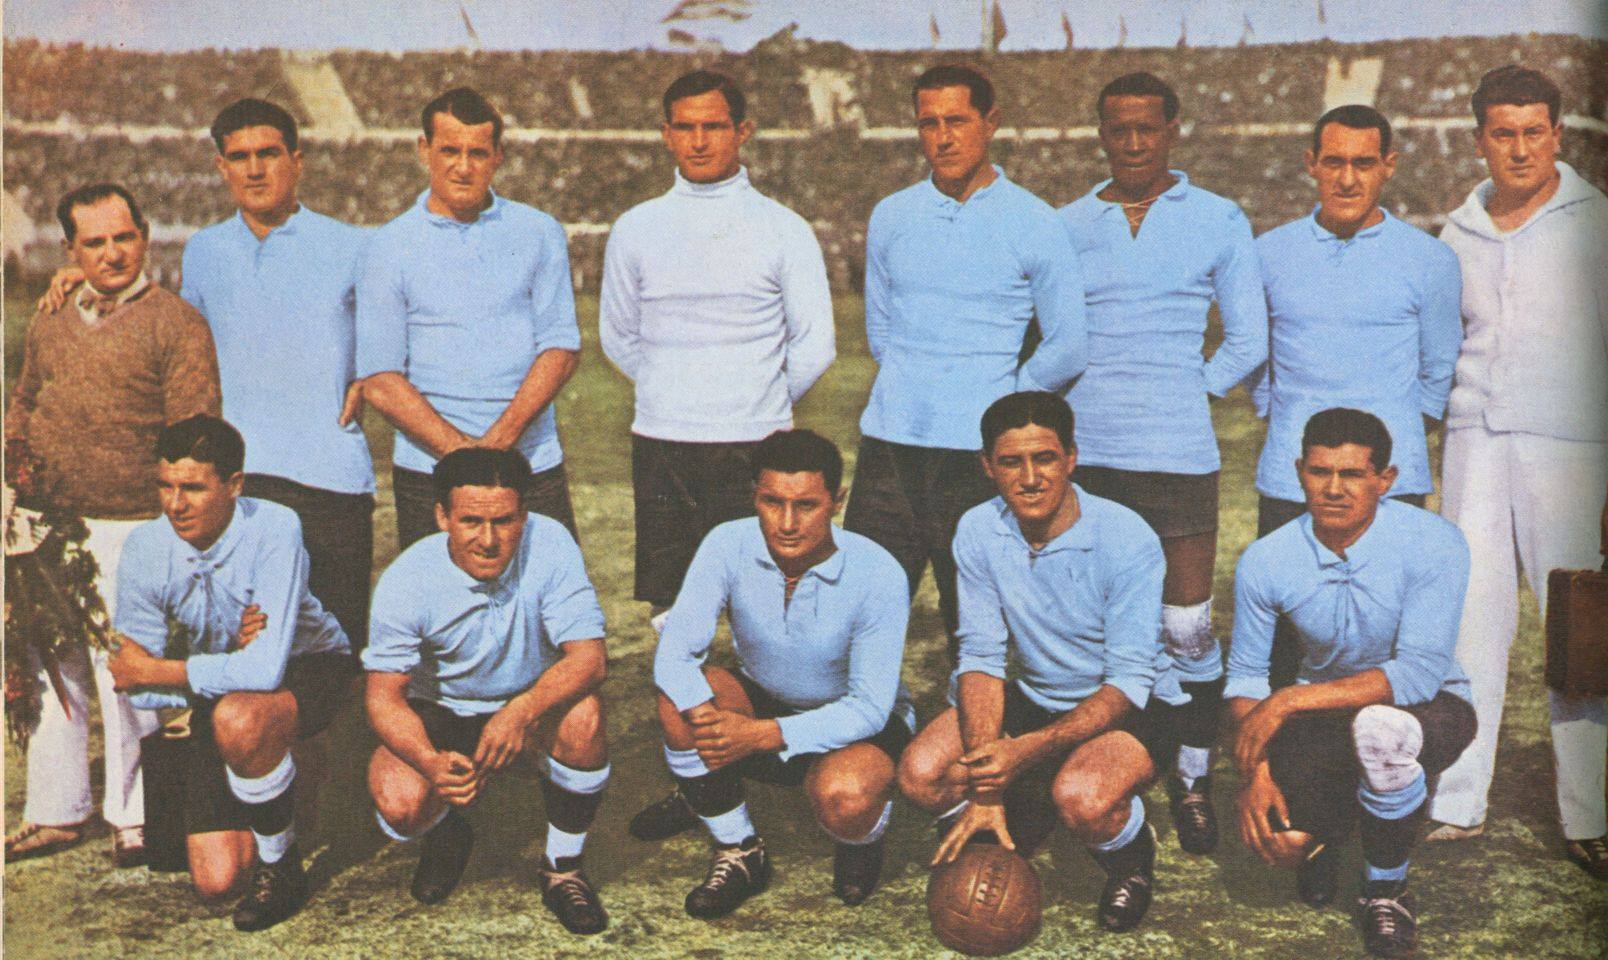 O Uruguai foi o primeiro país a sediar uma Copa do Mundo, em 1930. A Seleção Uruguaia sempre foi uma das mais fortes das Copas do Mundo.